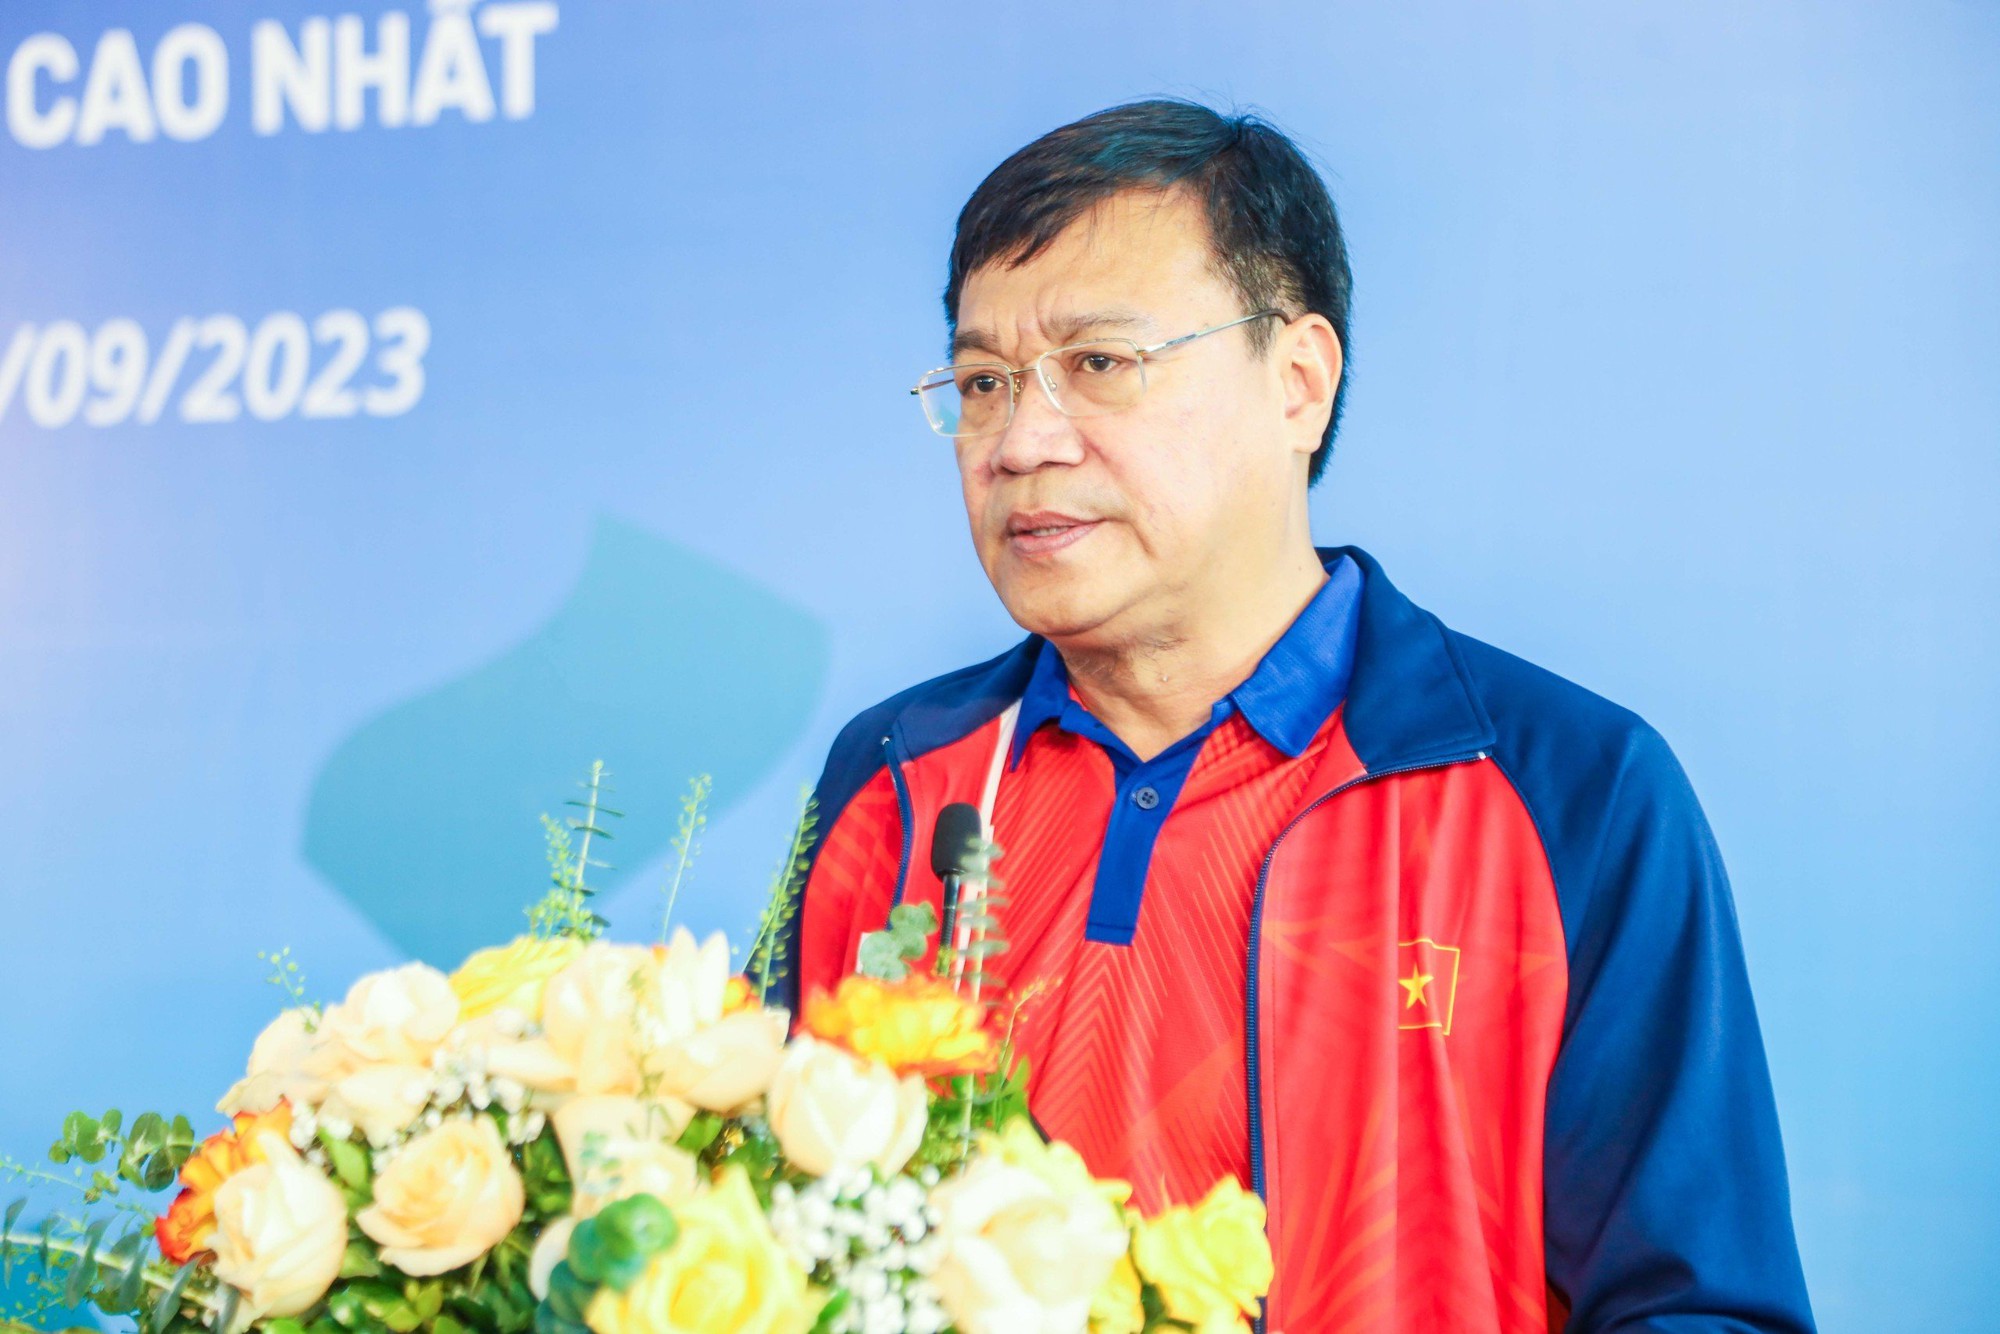 Cục trưởng Đặng Hà Việt: Vụ việc bữa ăn của VĐV đội tuyển bóng bàn trẻ là lời cảnh tỉnh với các trường hợp chỉ quan tâm lợi ích cá nhân - Ảnh 1.